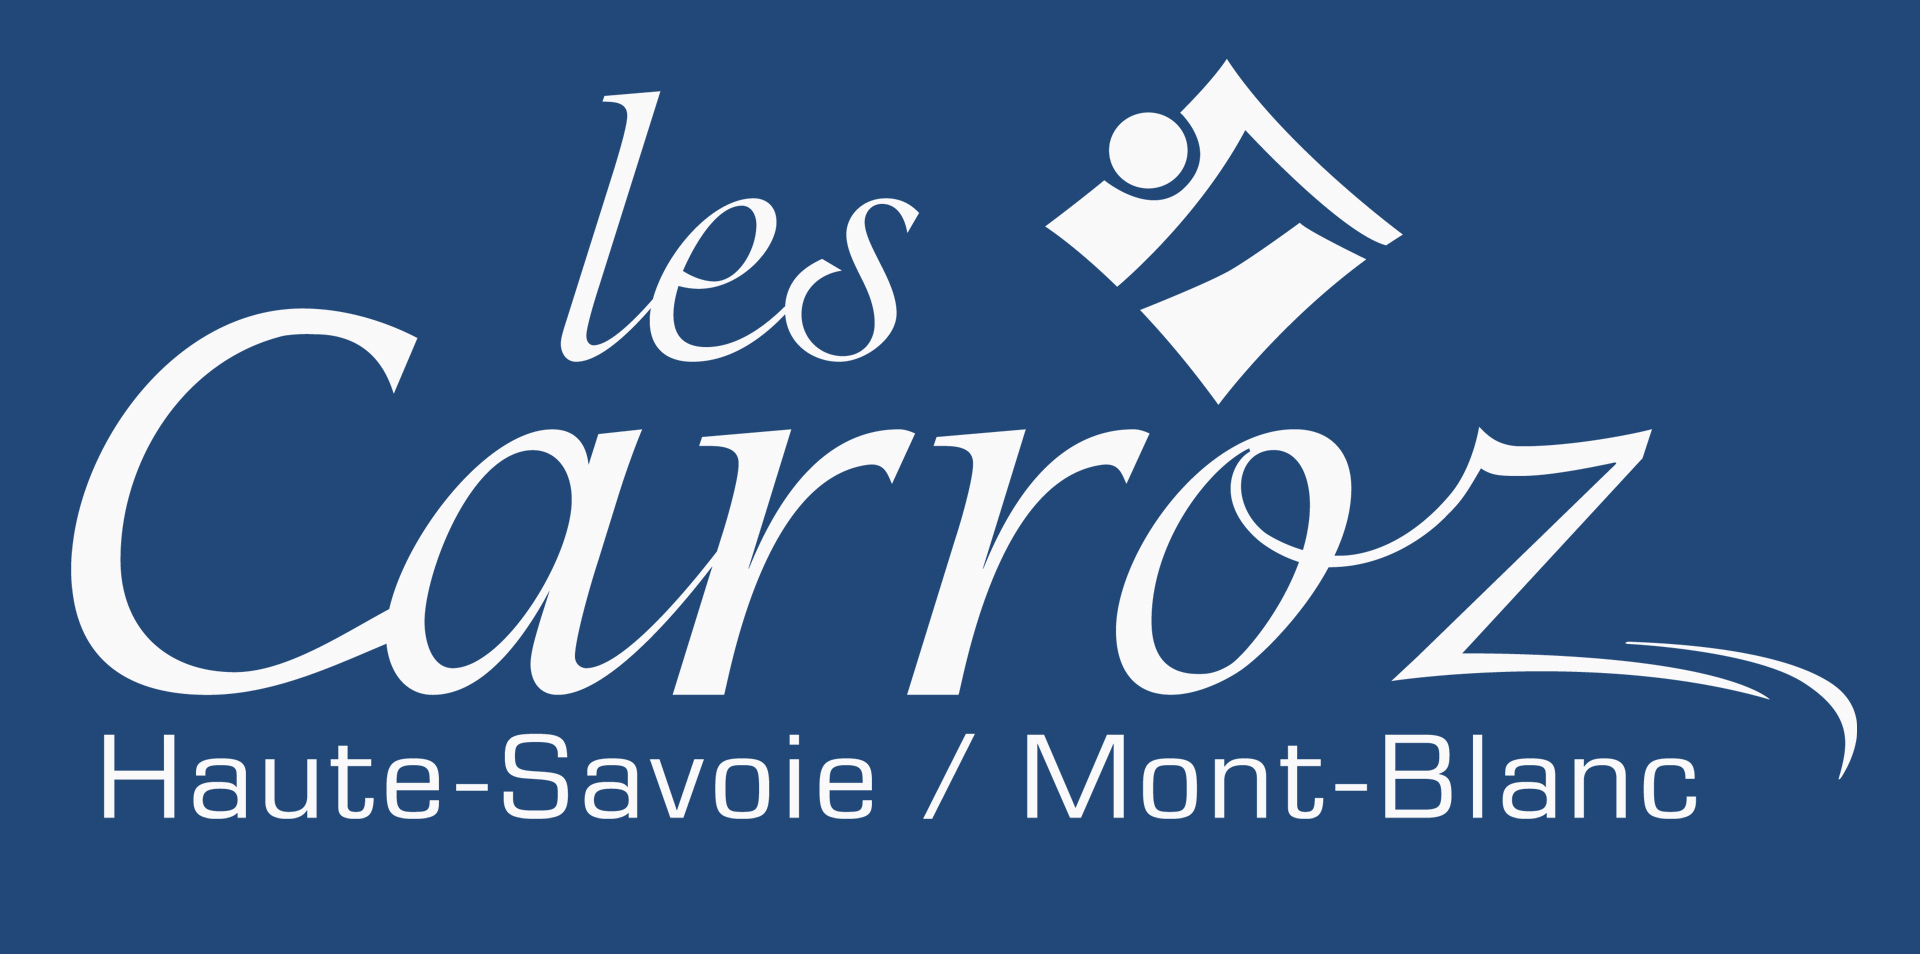 Logotipo de Les Carroz 